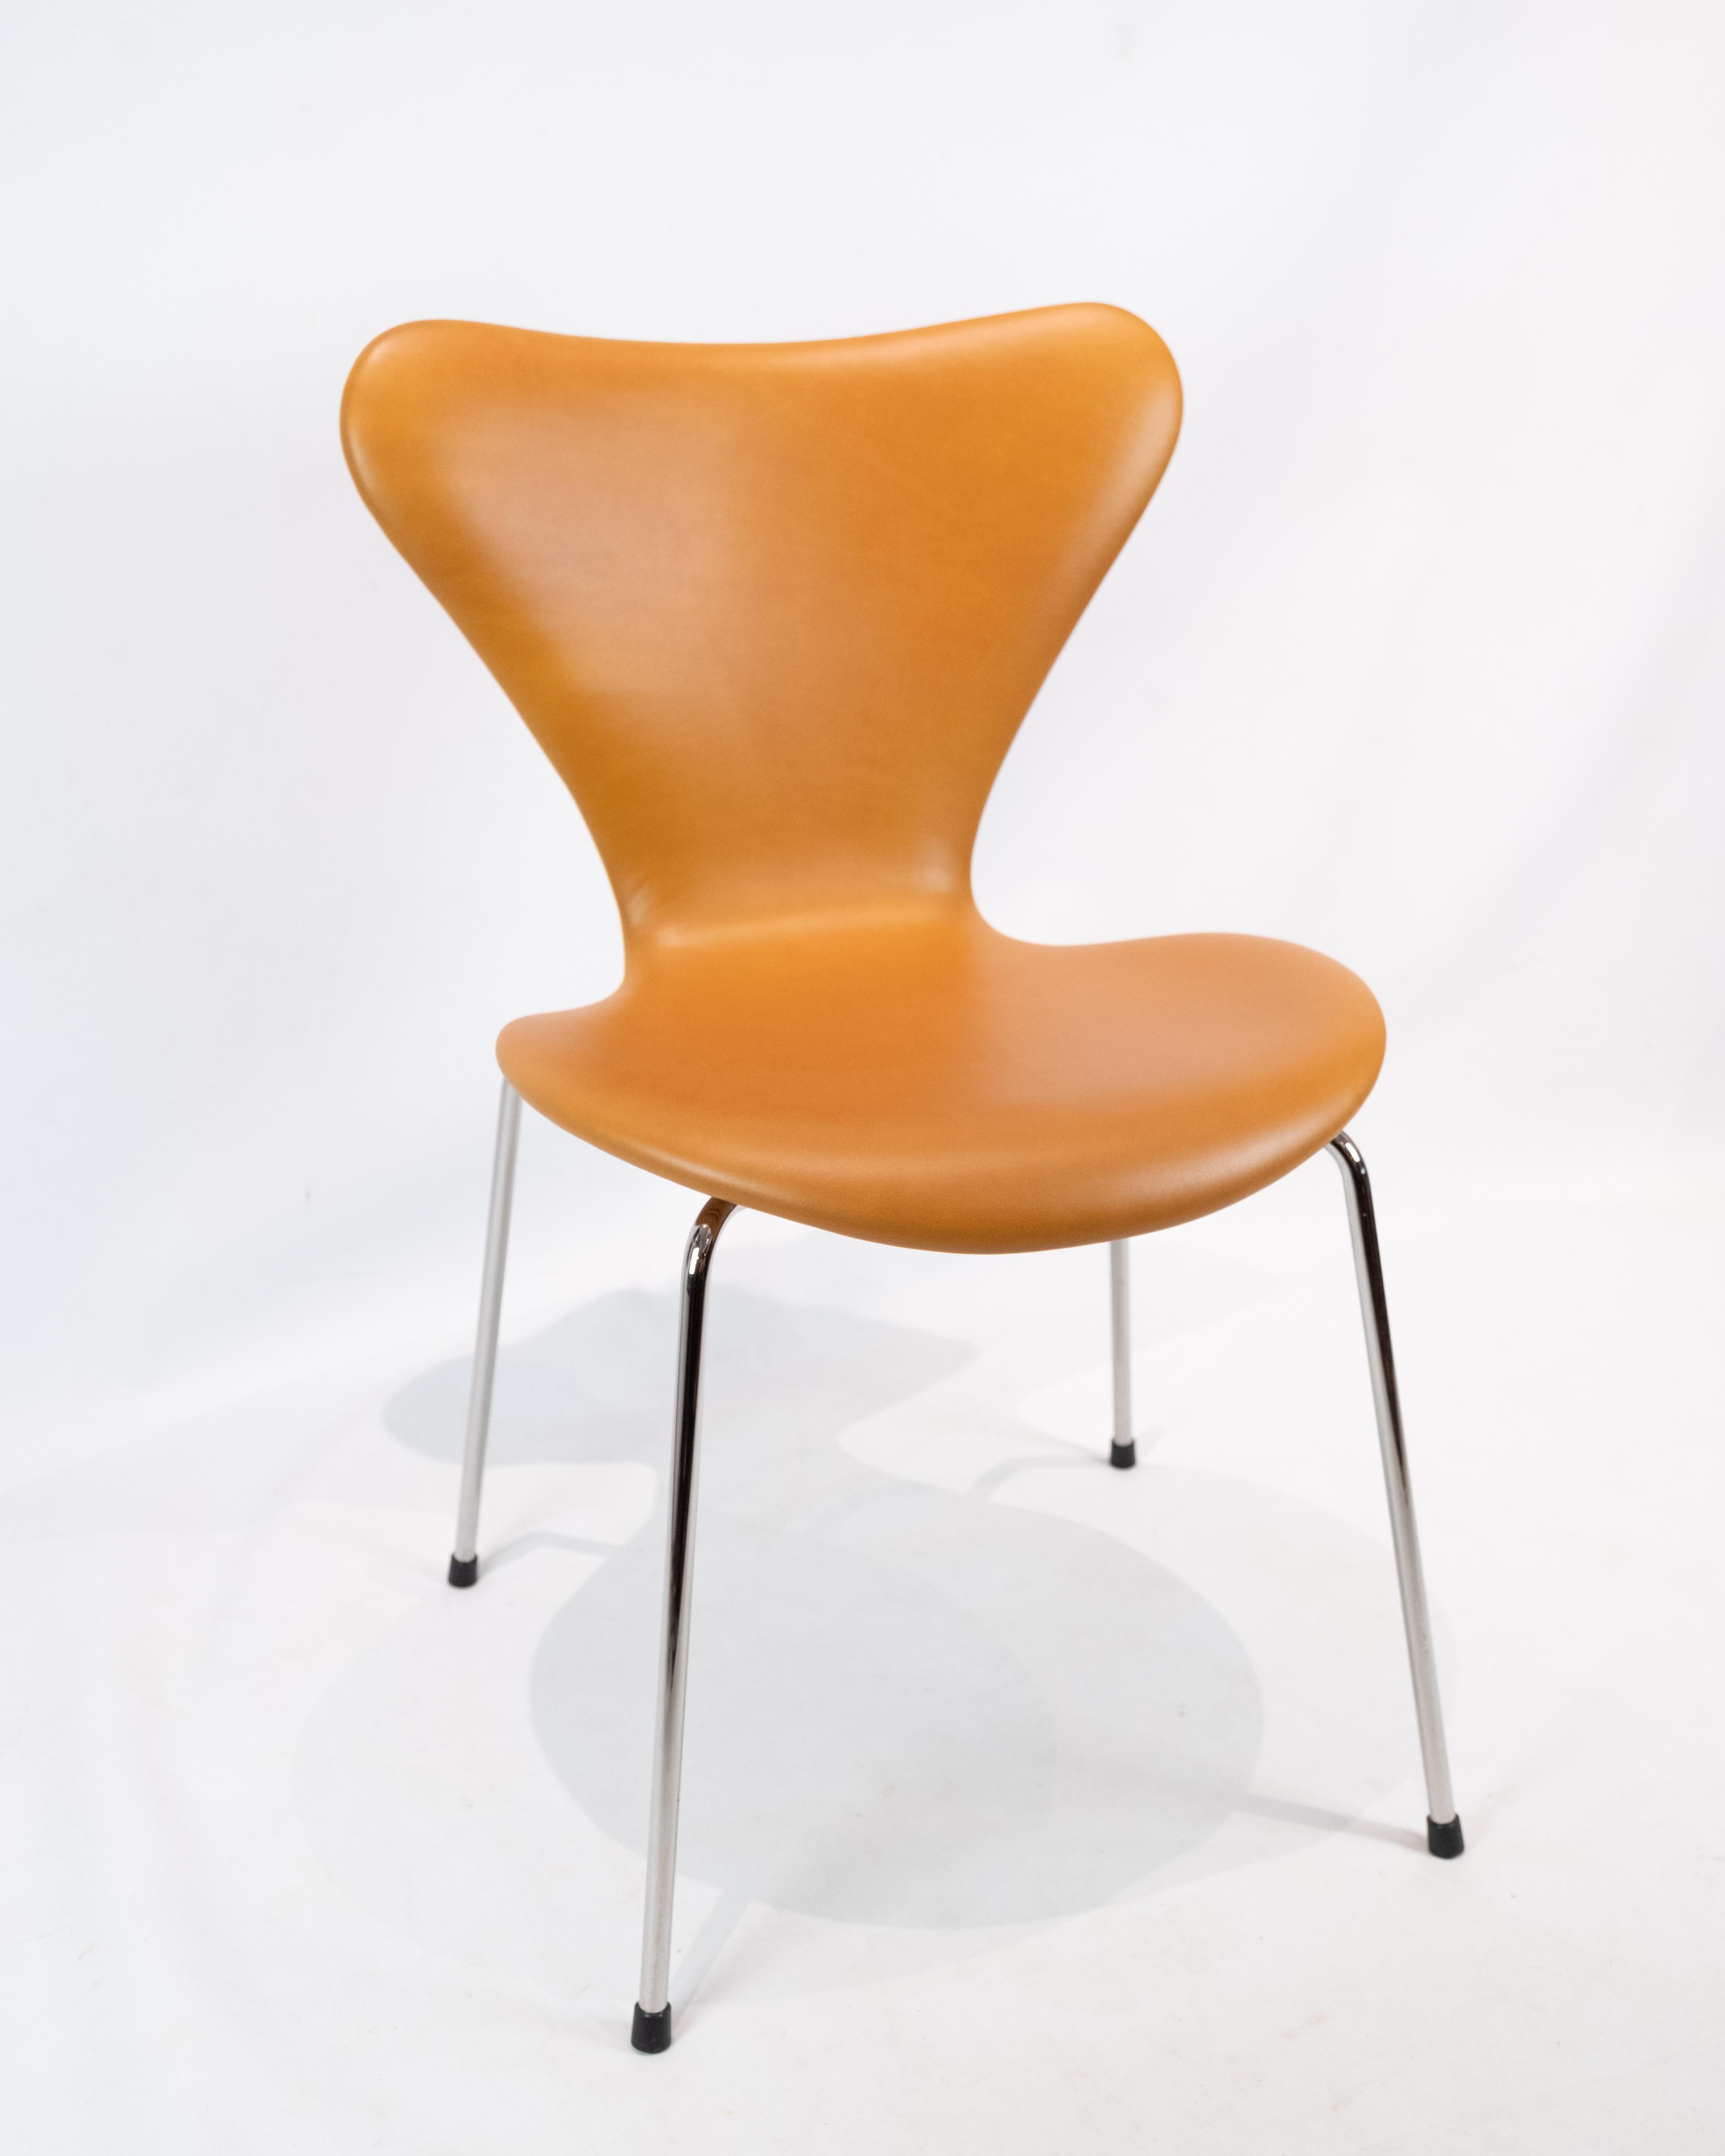 Exquisiter Satz von 6 Stühlen des Modells 3107 von Arne Jacobsen, hergestellt von Fritz Hansen, elegant verkleidet mit prächtigen cognacfarbenen klassischen Lederbezügen.

Diese ikonischen Stühle, ein Zeugnis für Jacobsens visionäres Design und